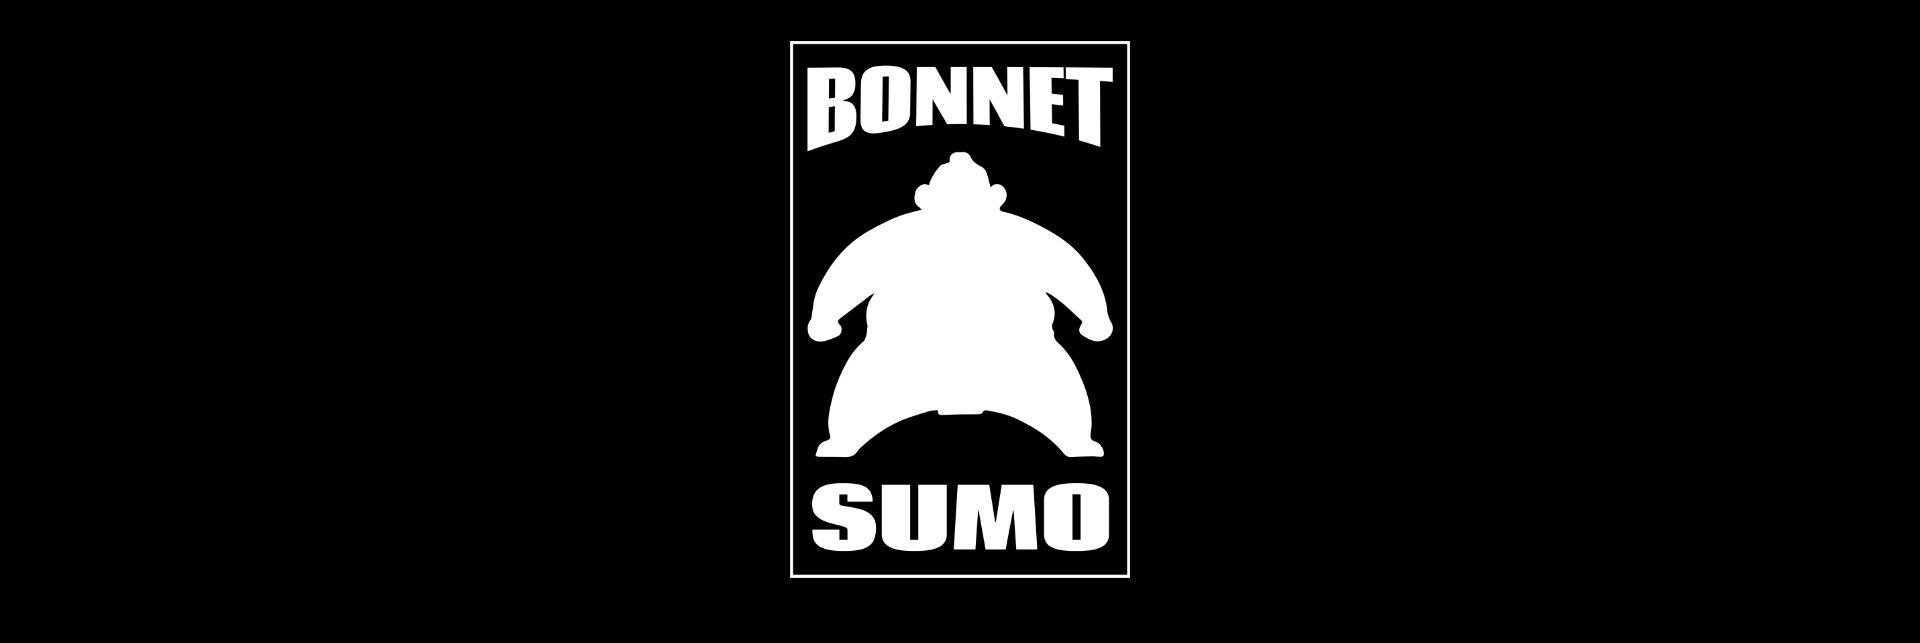 Bonnet Sumo